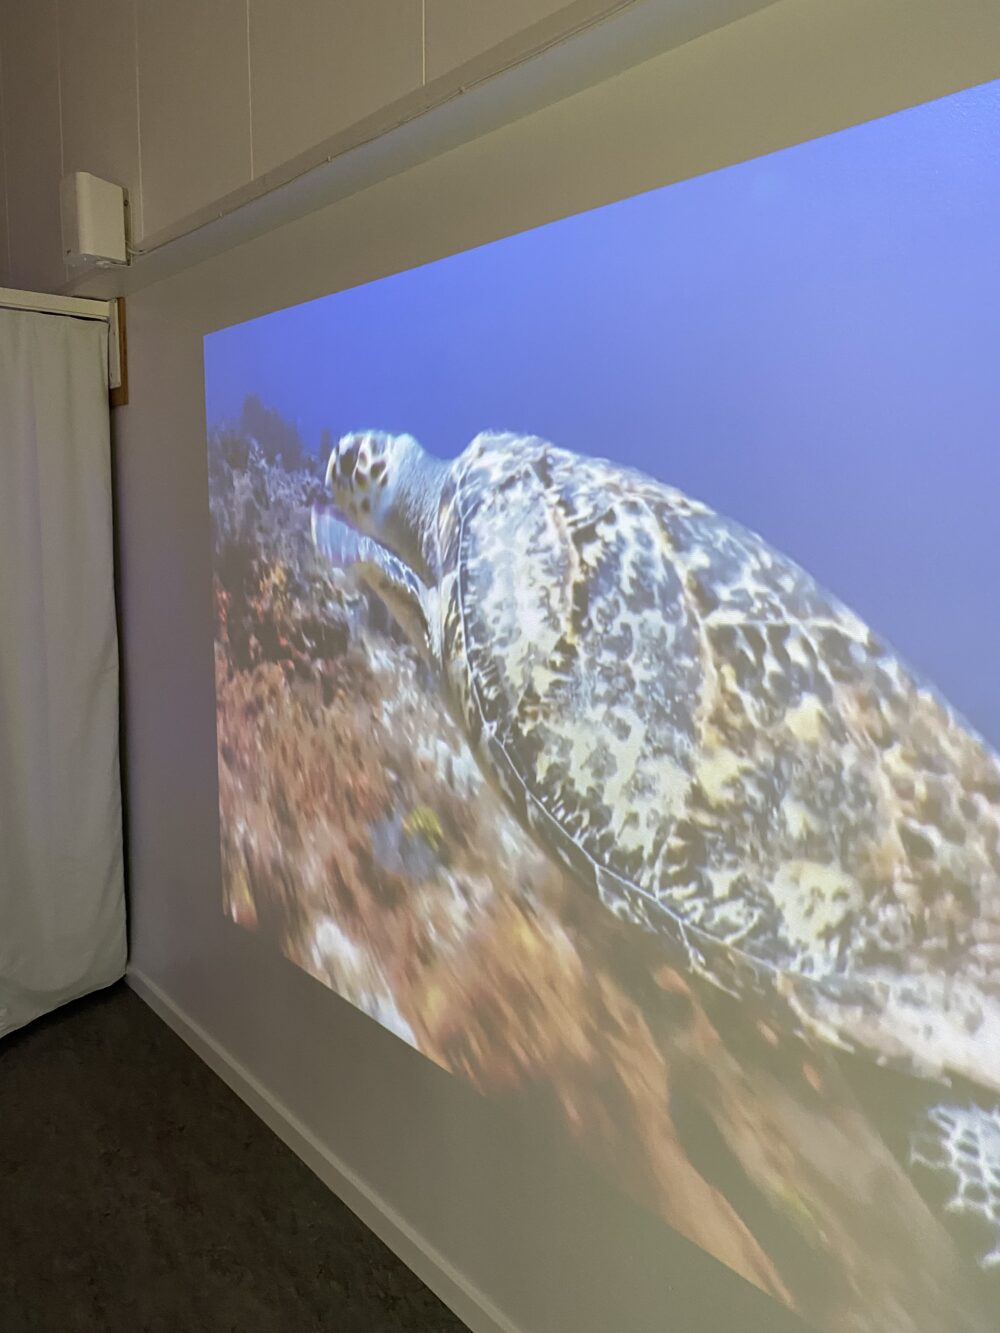 EyeView projektor til at vise sansefilm - billede af skildpadde på væggen